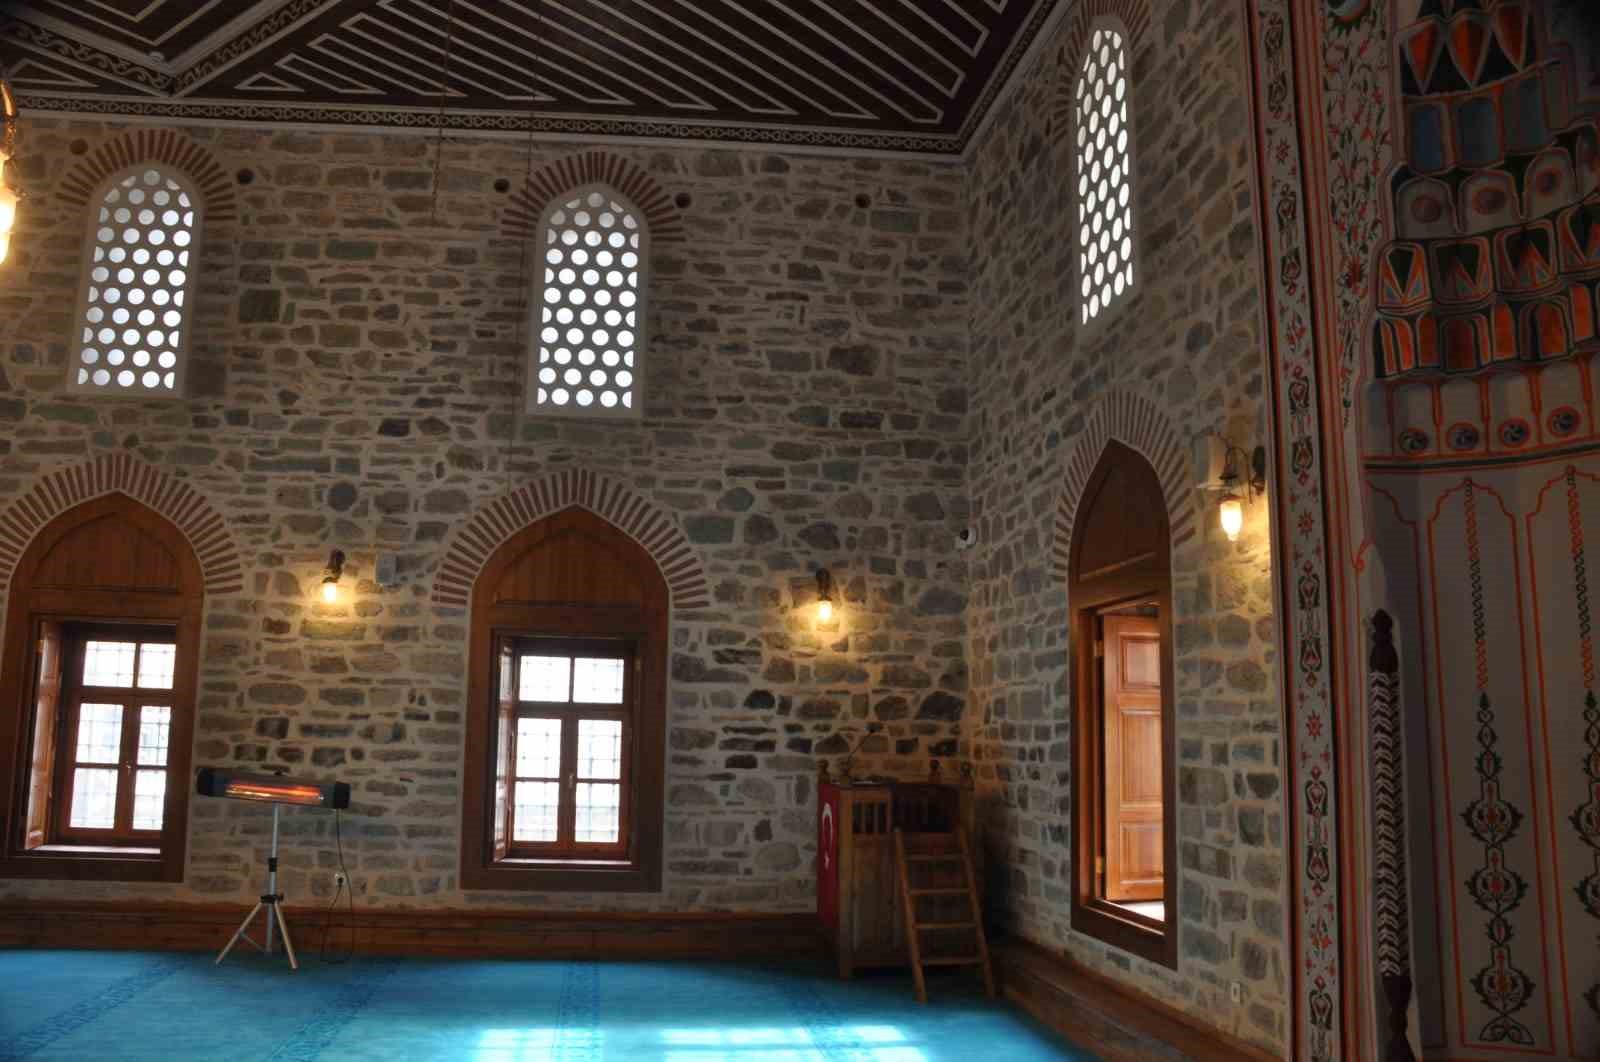 kanuni sultan süleyman’ın yaptırdığı camide 7 yıl sonra ilk namaz